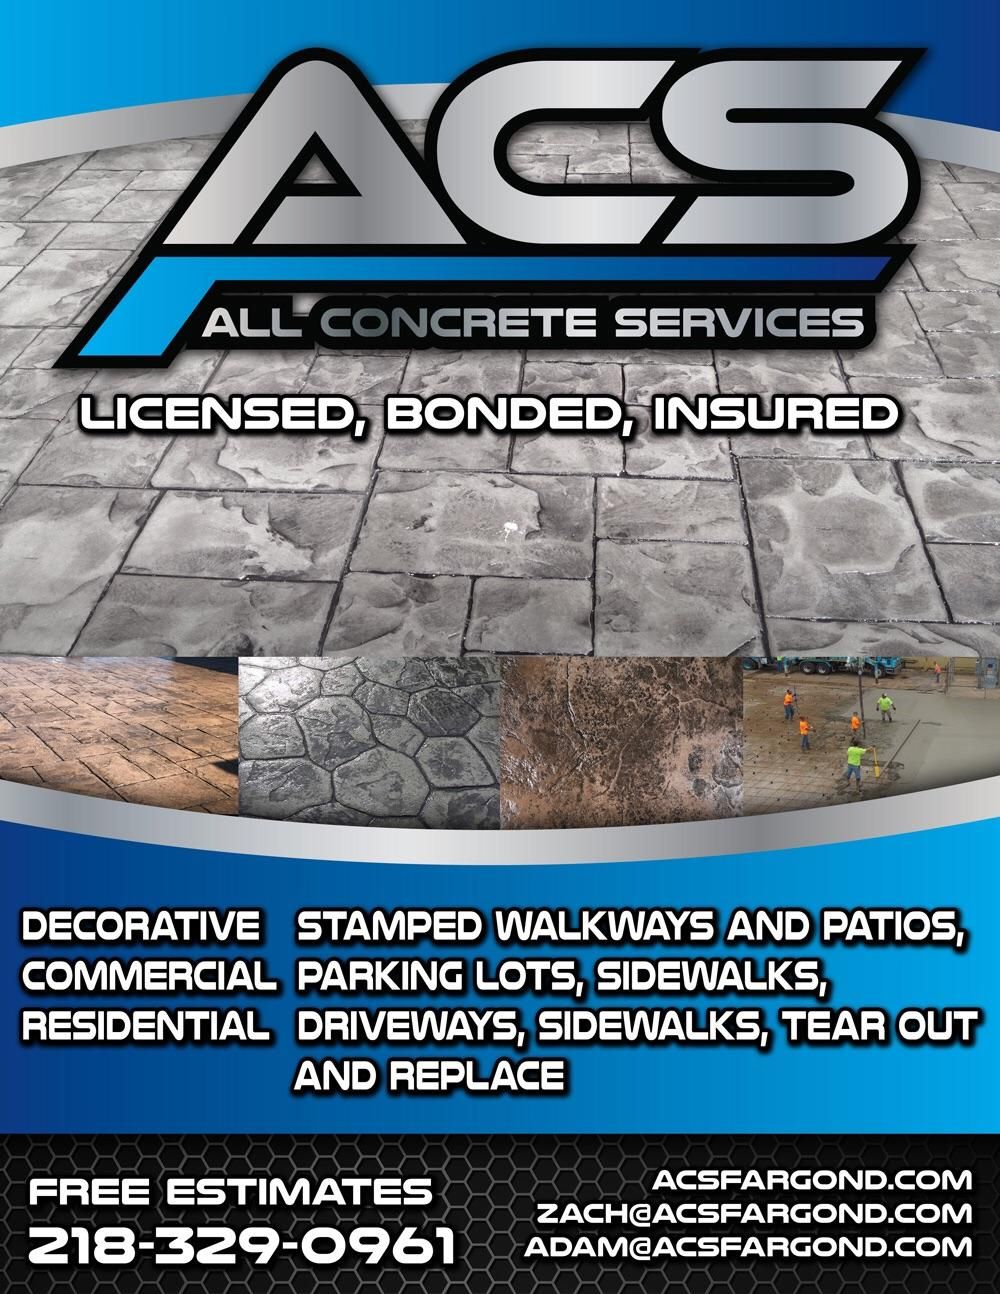 All Concrete Services, LLC